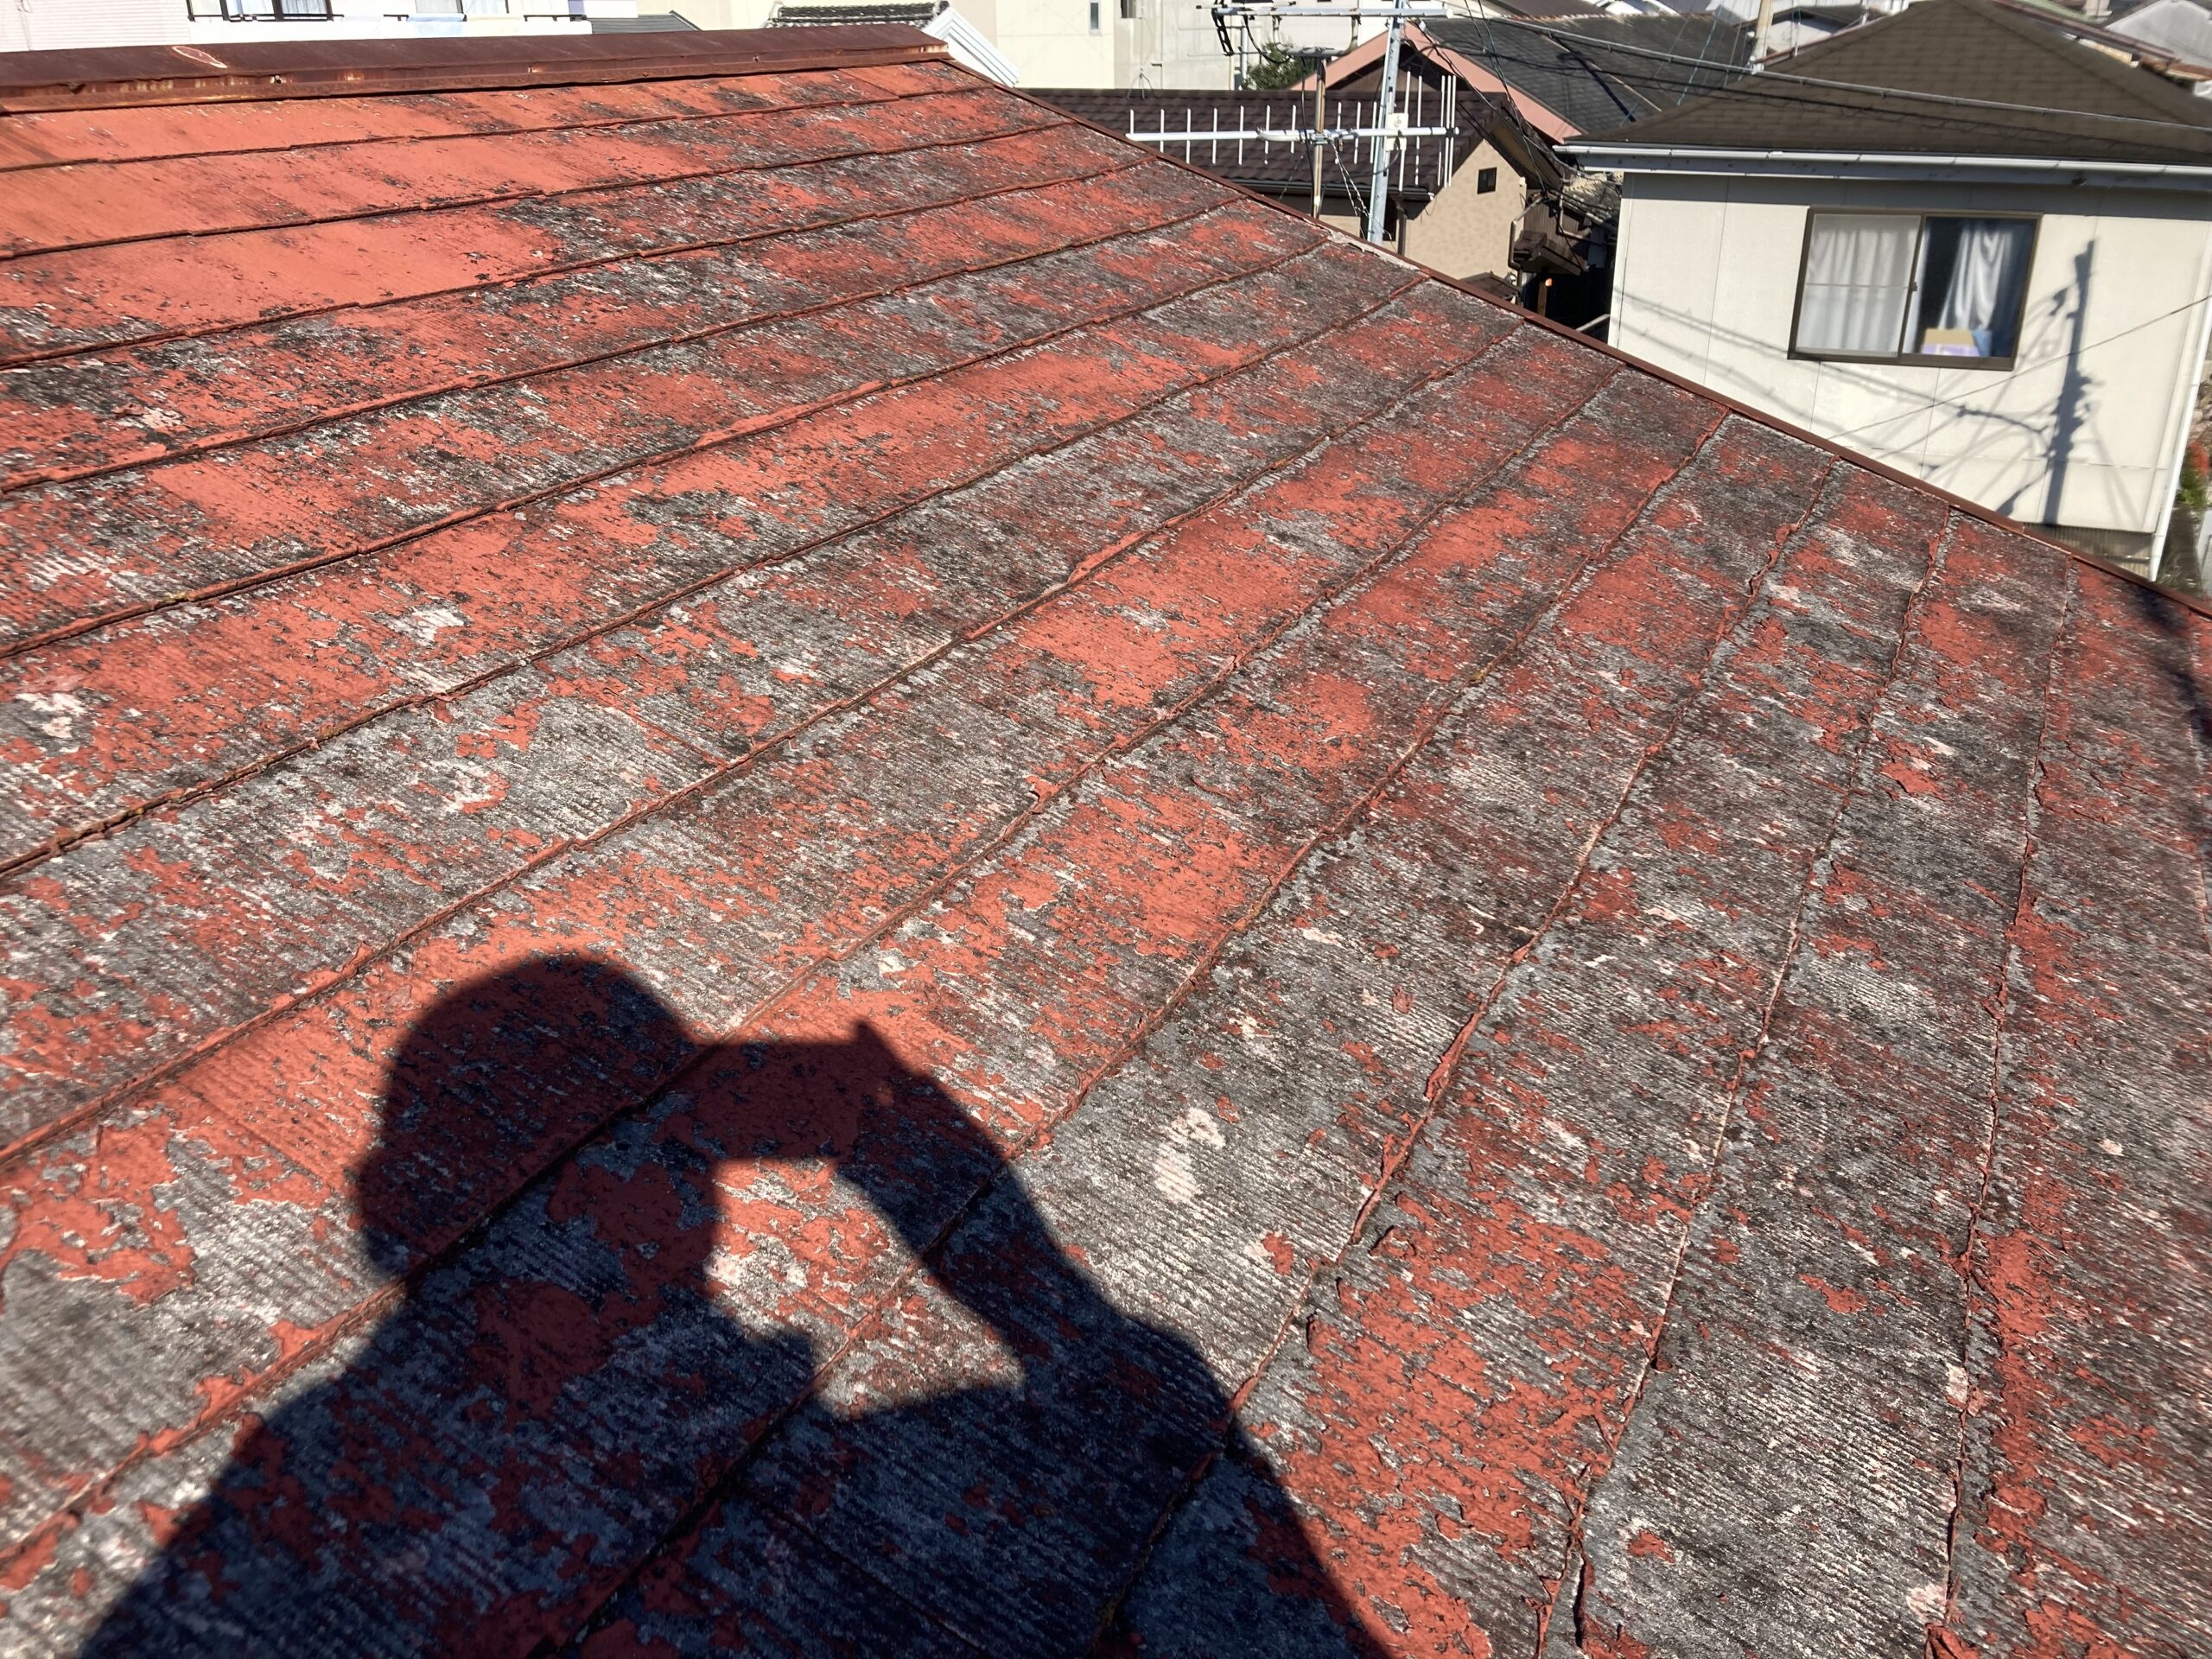 施工前の状態です。既存の屋根はｶﾗｰﾍﾞｽﾄに数年前に塗り替えをされておられました。既存塗膜の変色、剥離が全体的にみられ、素地のｶﾗｰﾍﾞｽﾄがむき出しになっている状態でした。